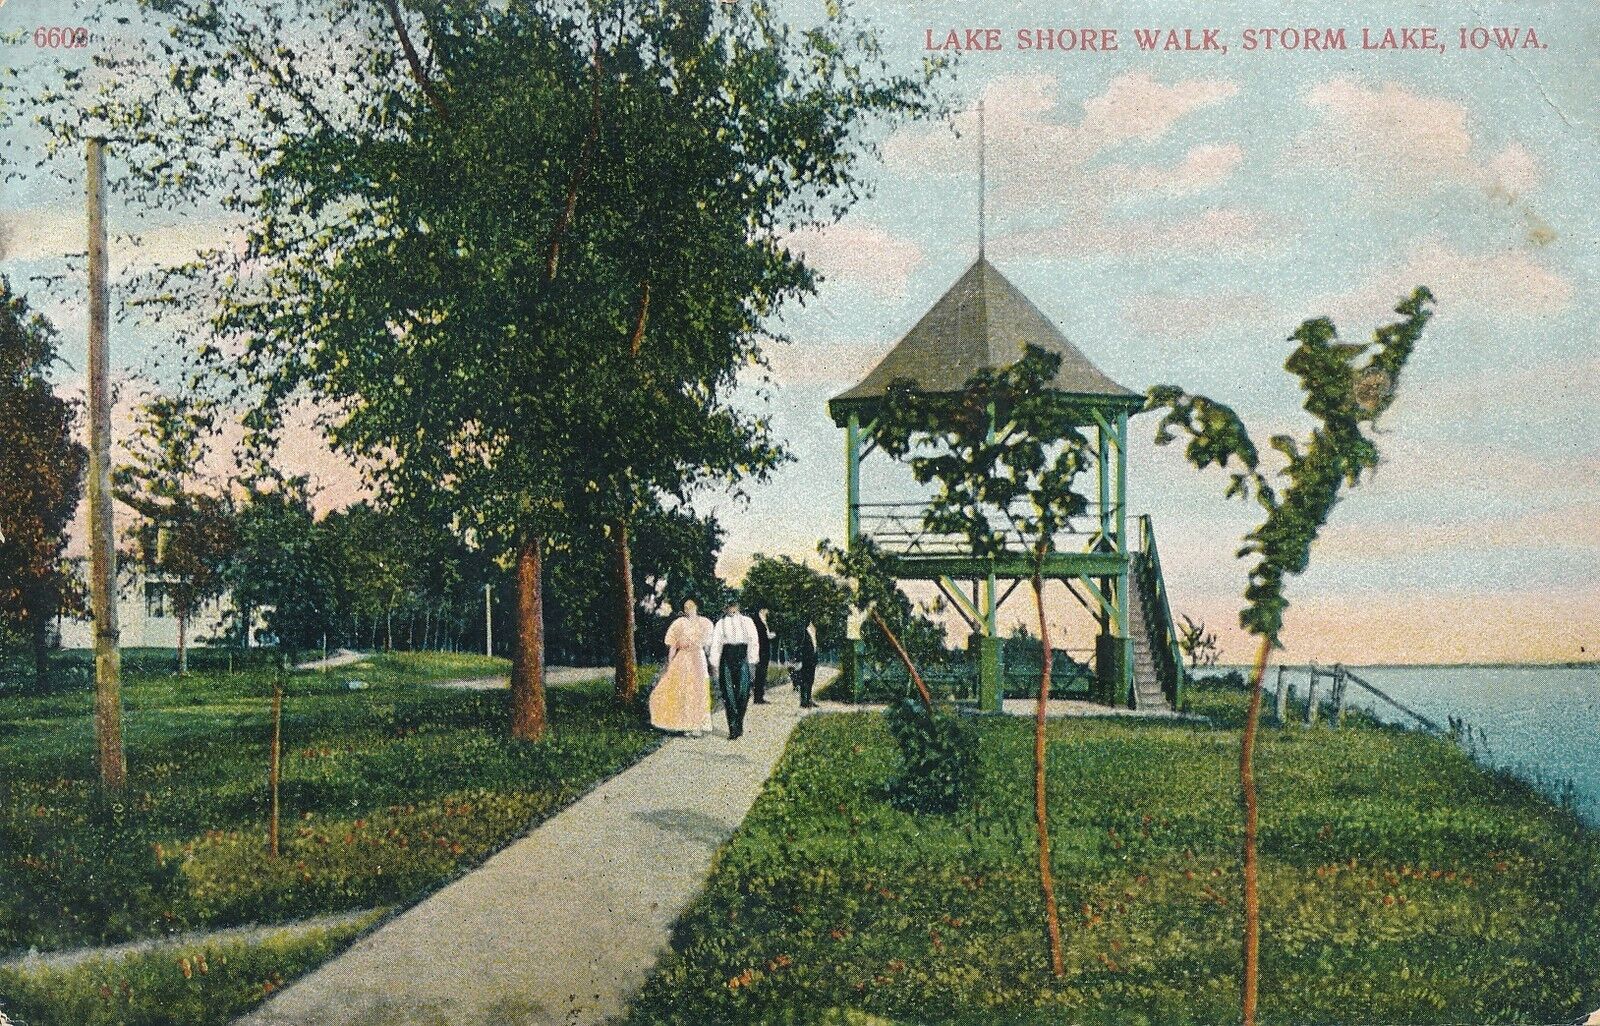 STORM LAKE IA – Lake Shore Walk